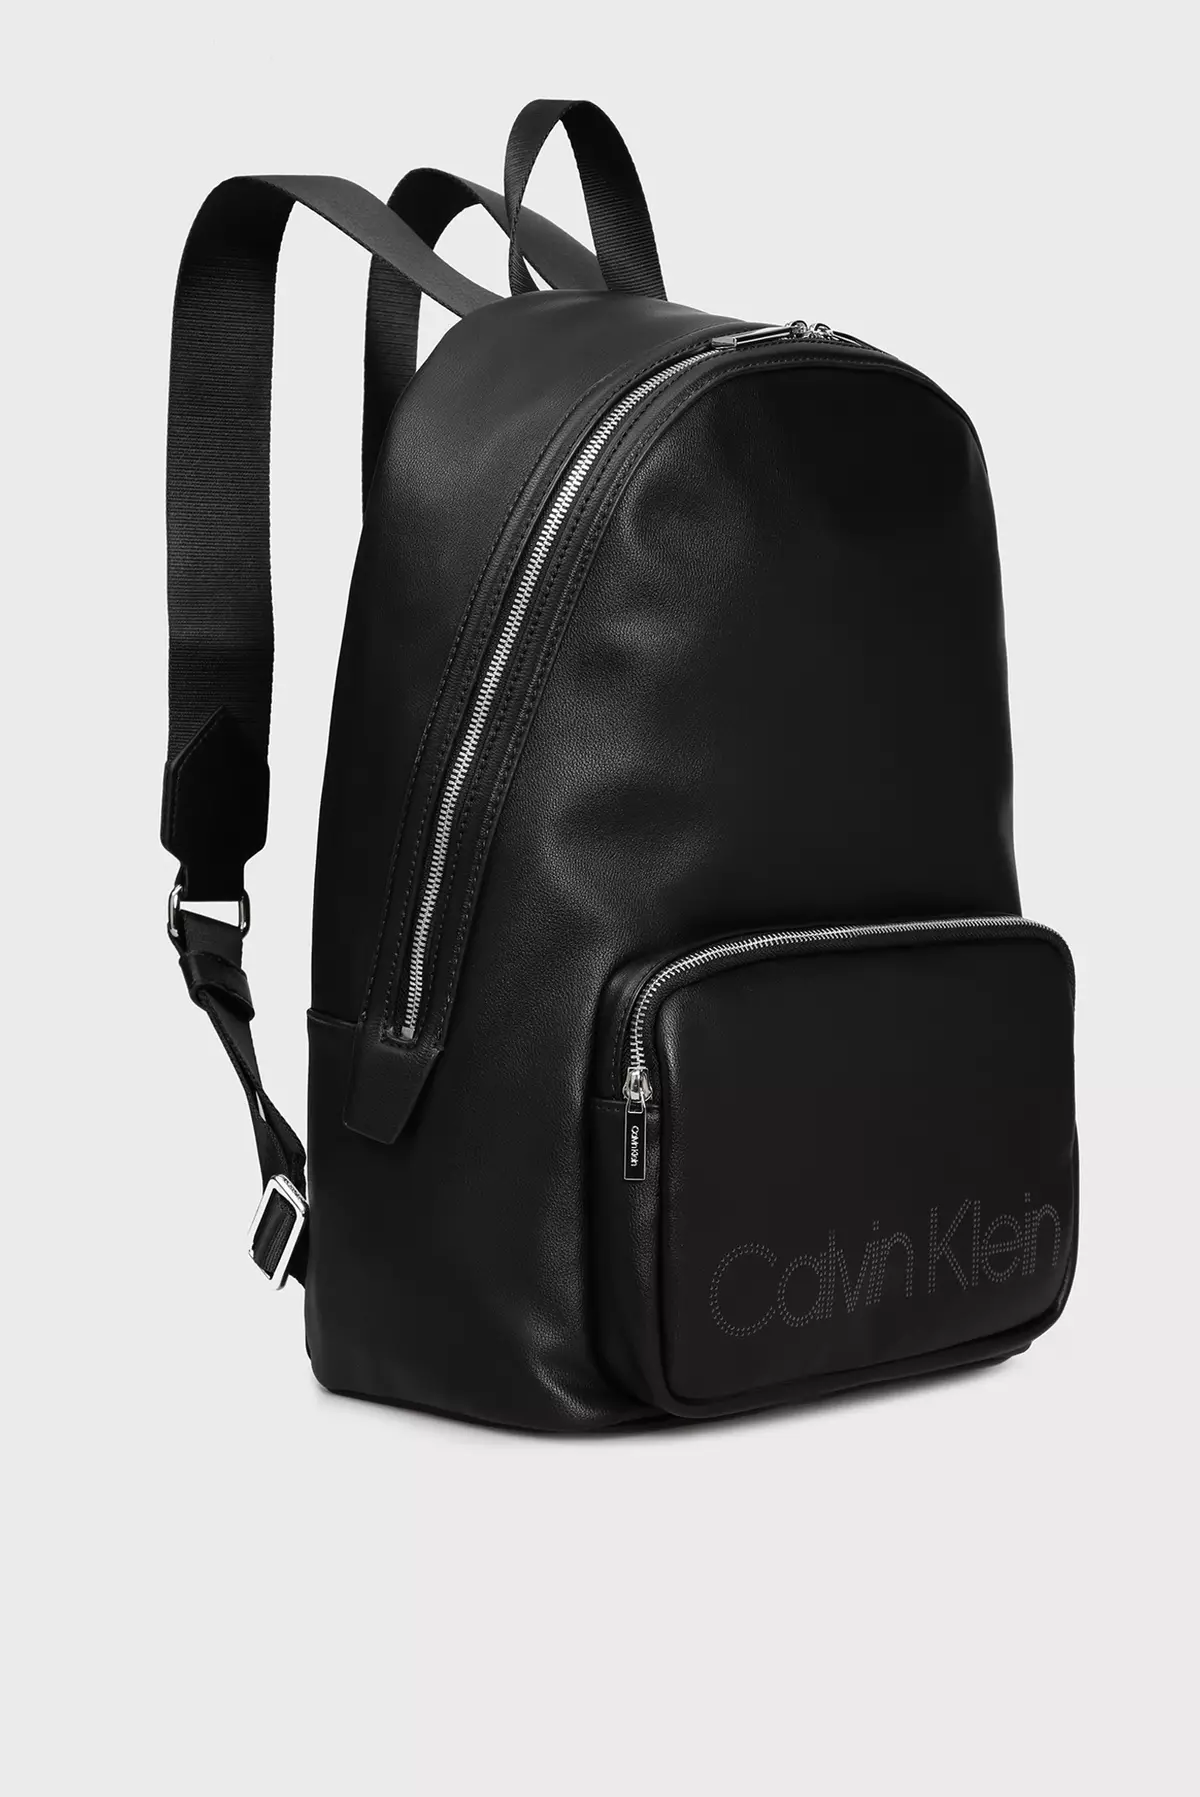 Calvin Klein Backpacks: Female reş û mêr û mêr, çermê sor, spî, zer bi monogram û rengên rengîn ên din - Backpacks 15401_7